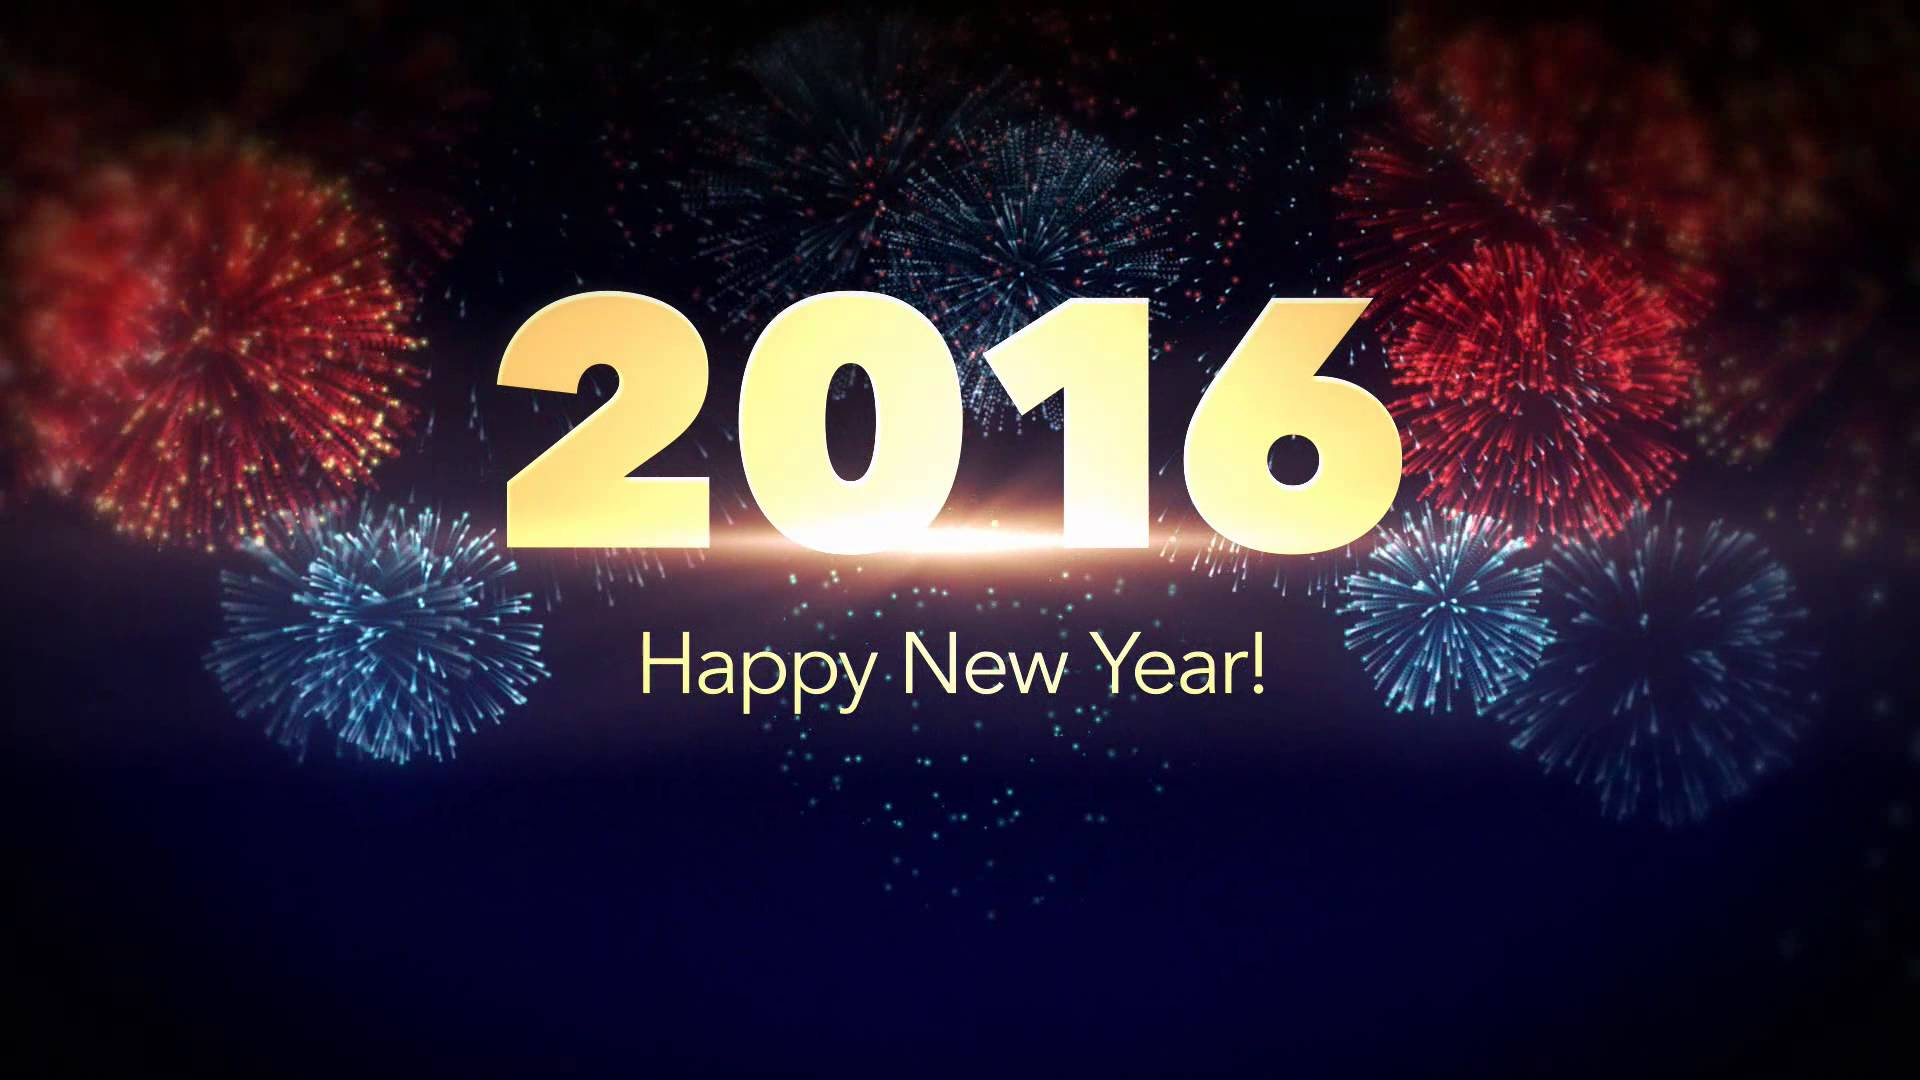 Evotec Happy New Year 2016